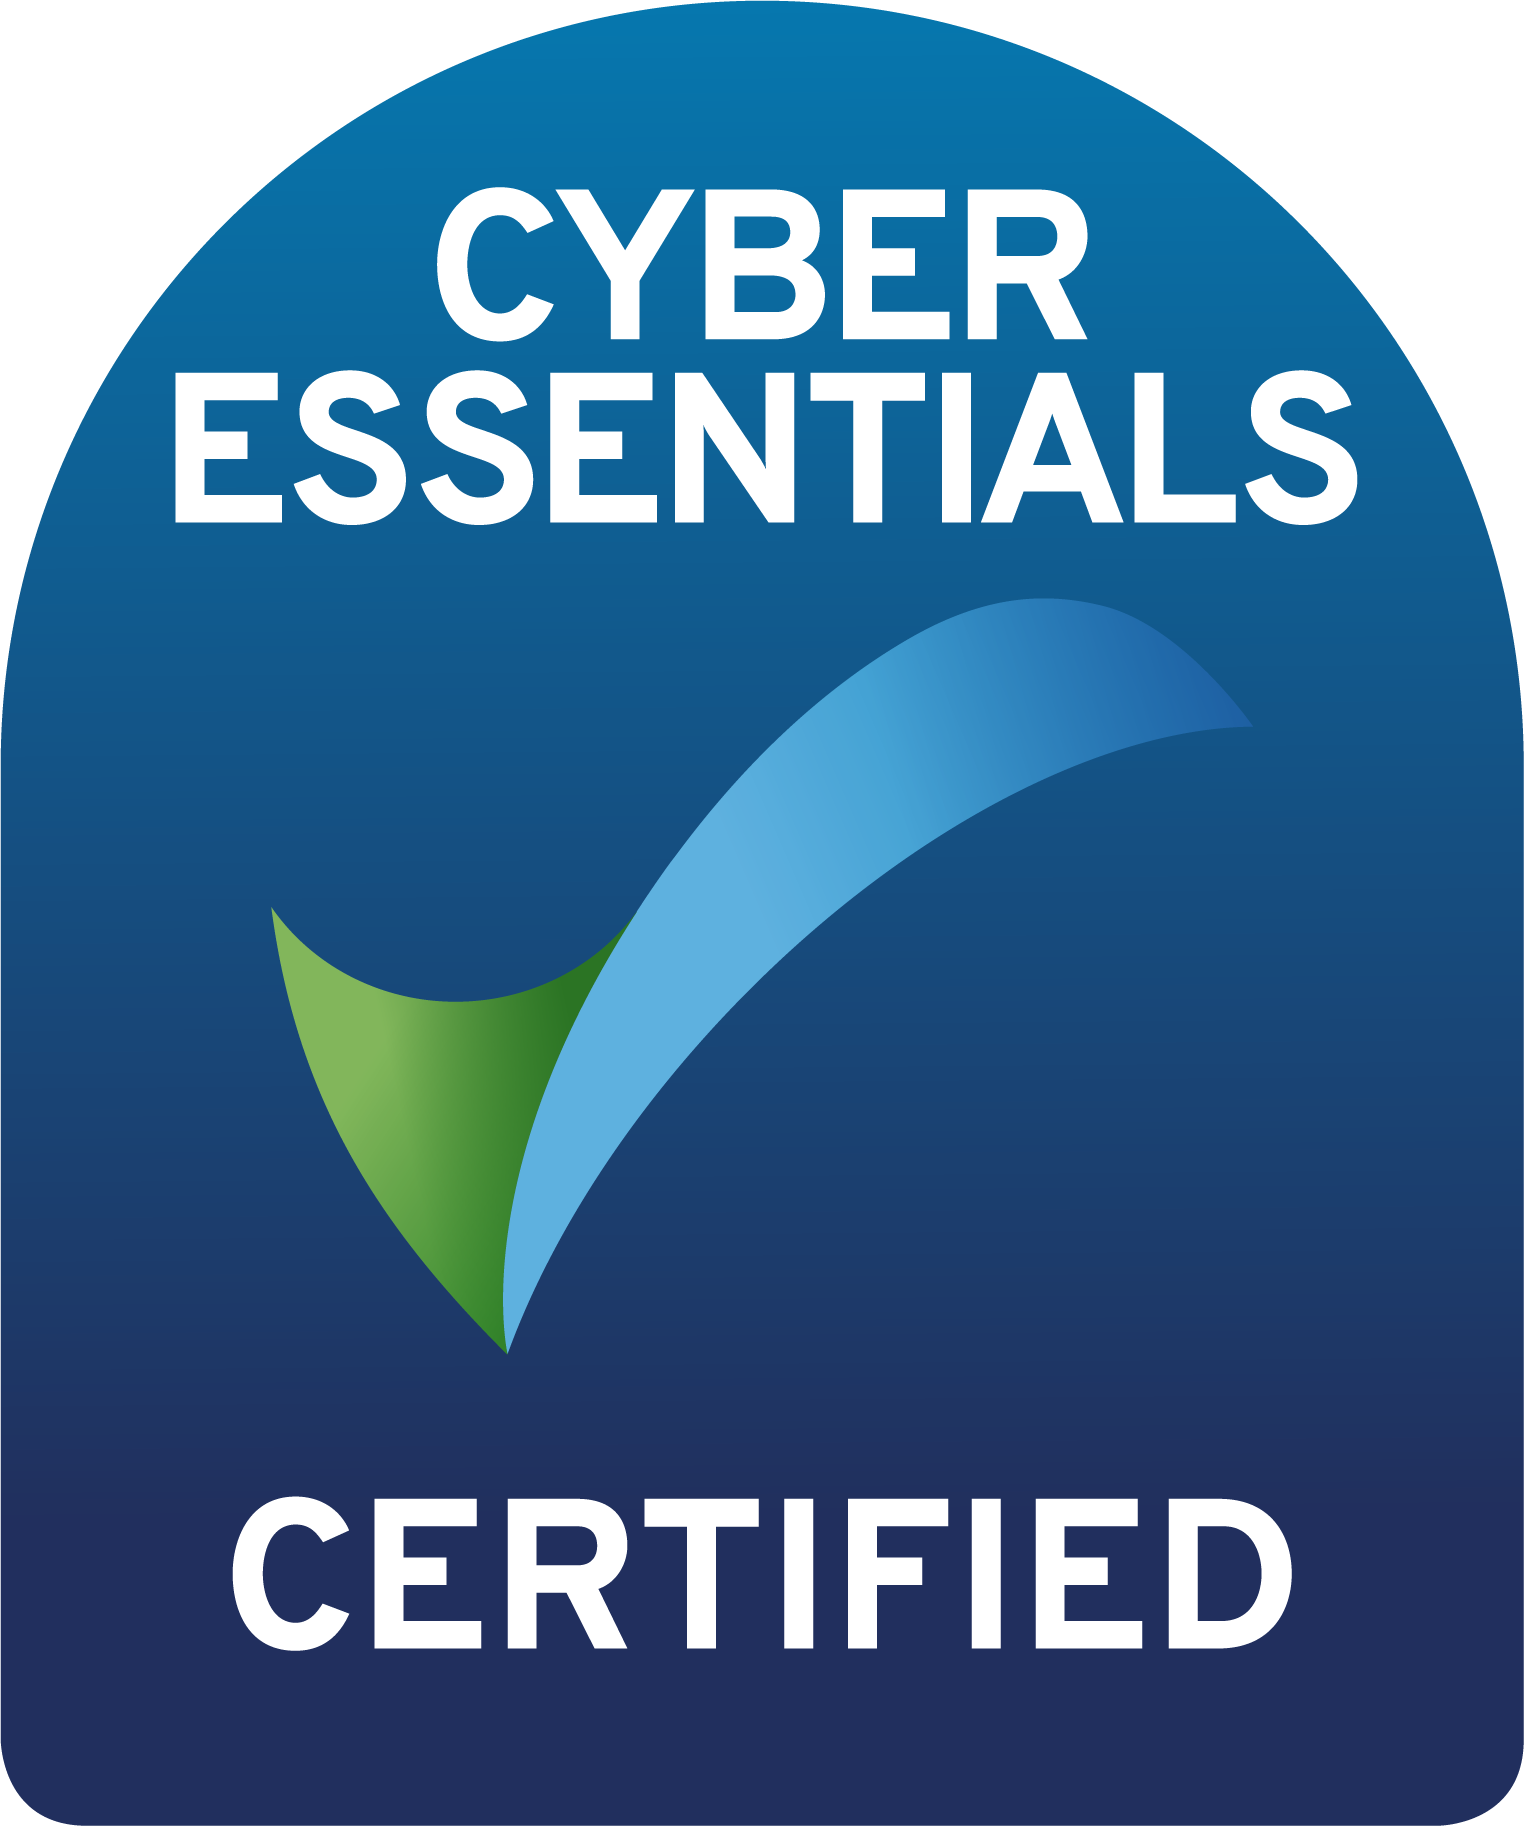 cyberessentialscertification markcolour 1756664976 556839004